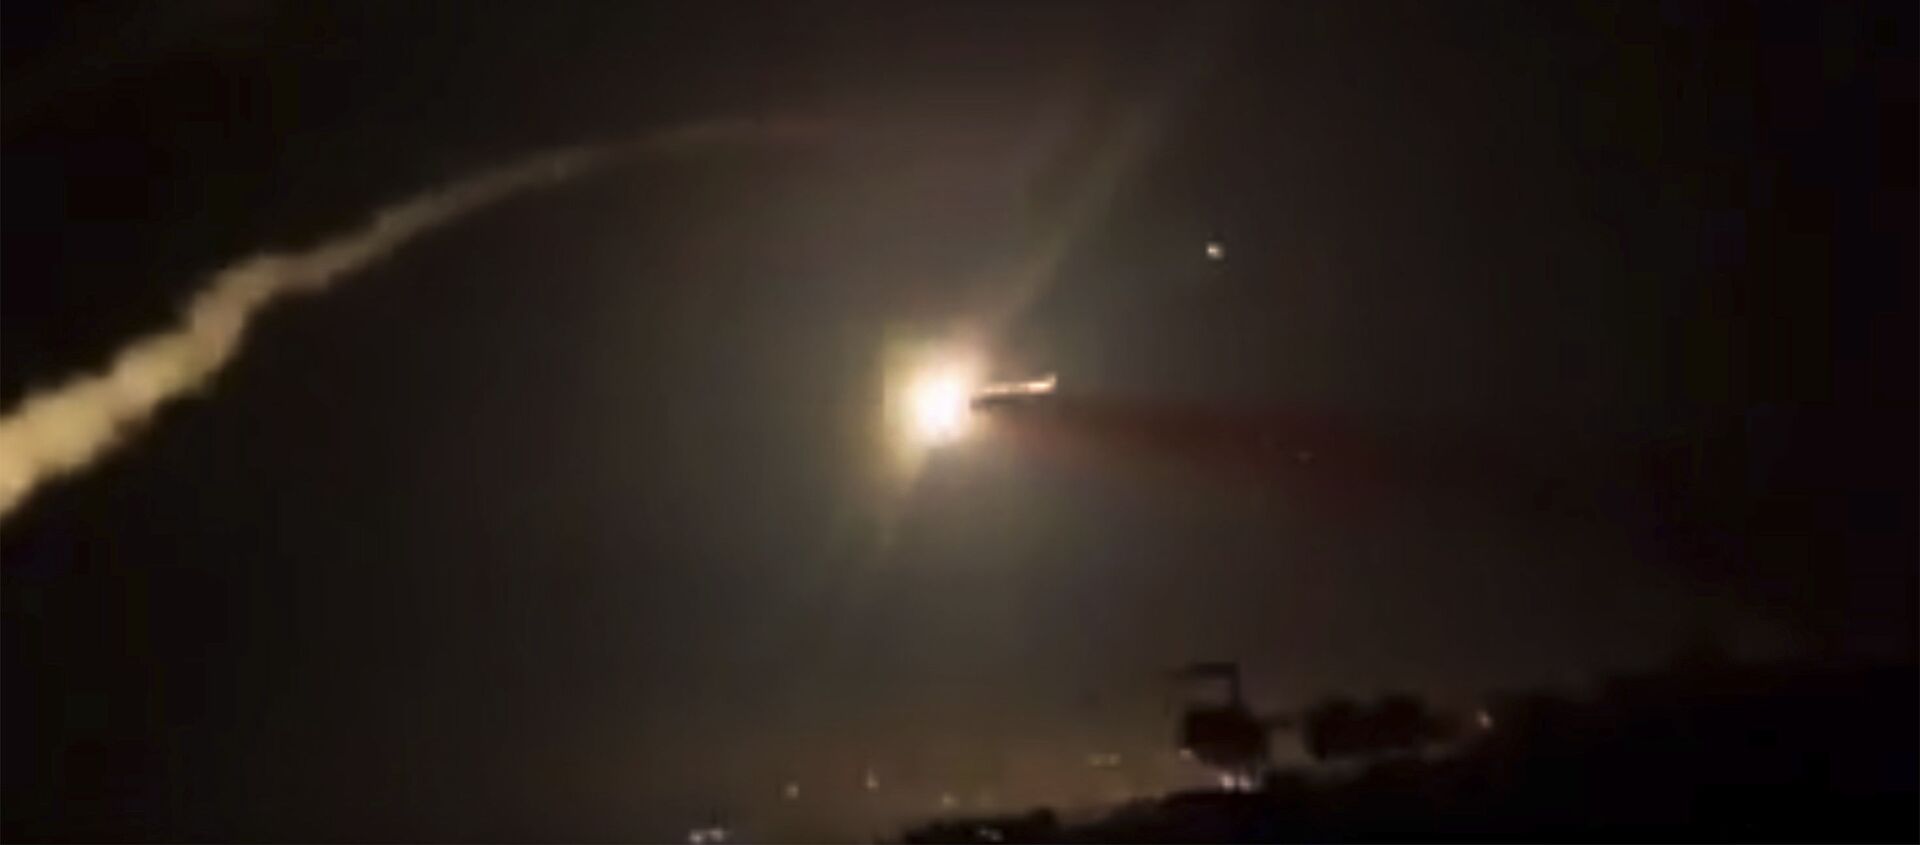  رهگیری یک موشک از نوار توسط اسرائیل   - اسپوتنیک افغانستان  , 1920, 25.04.2021